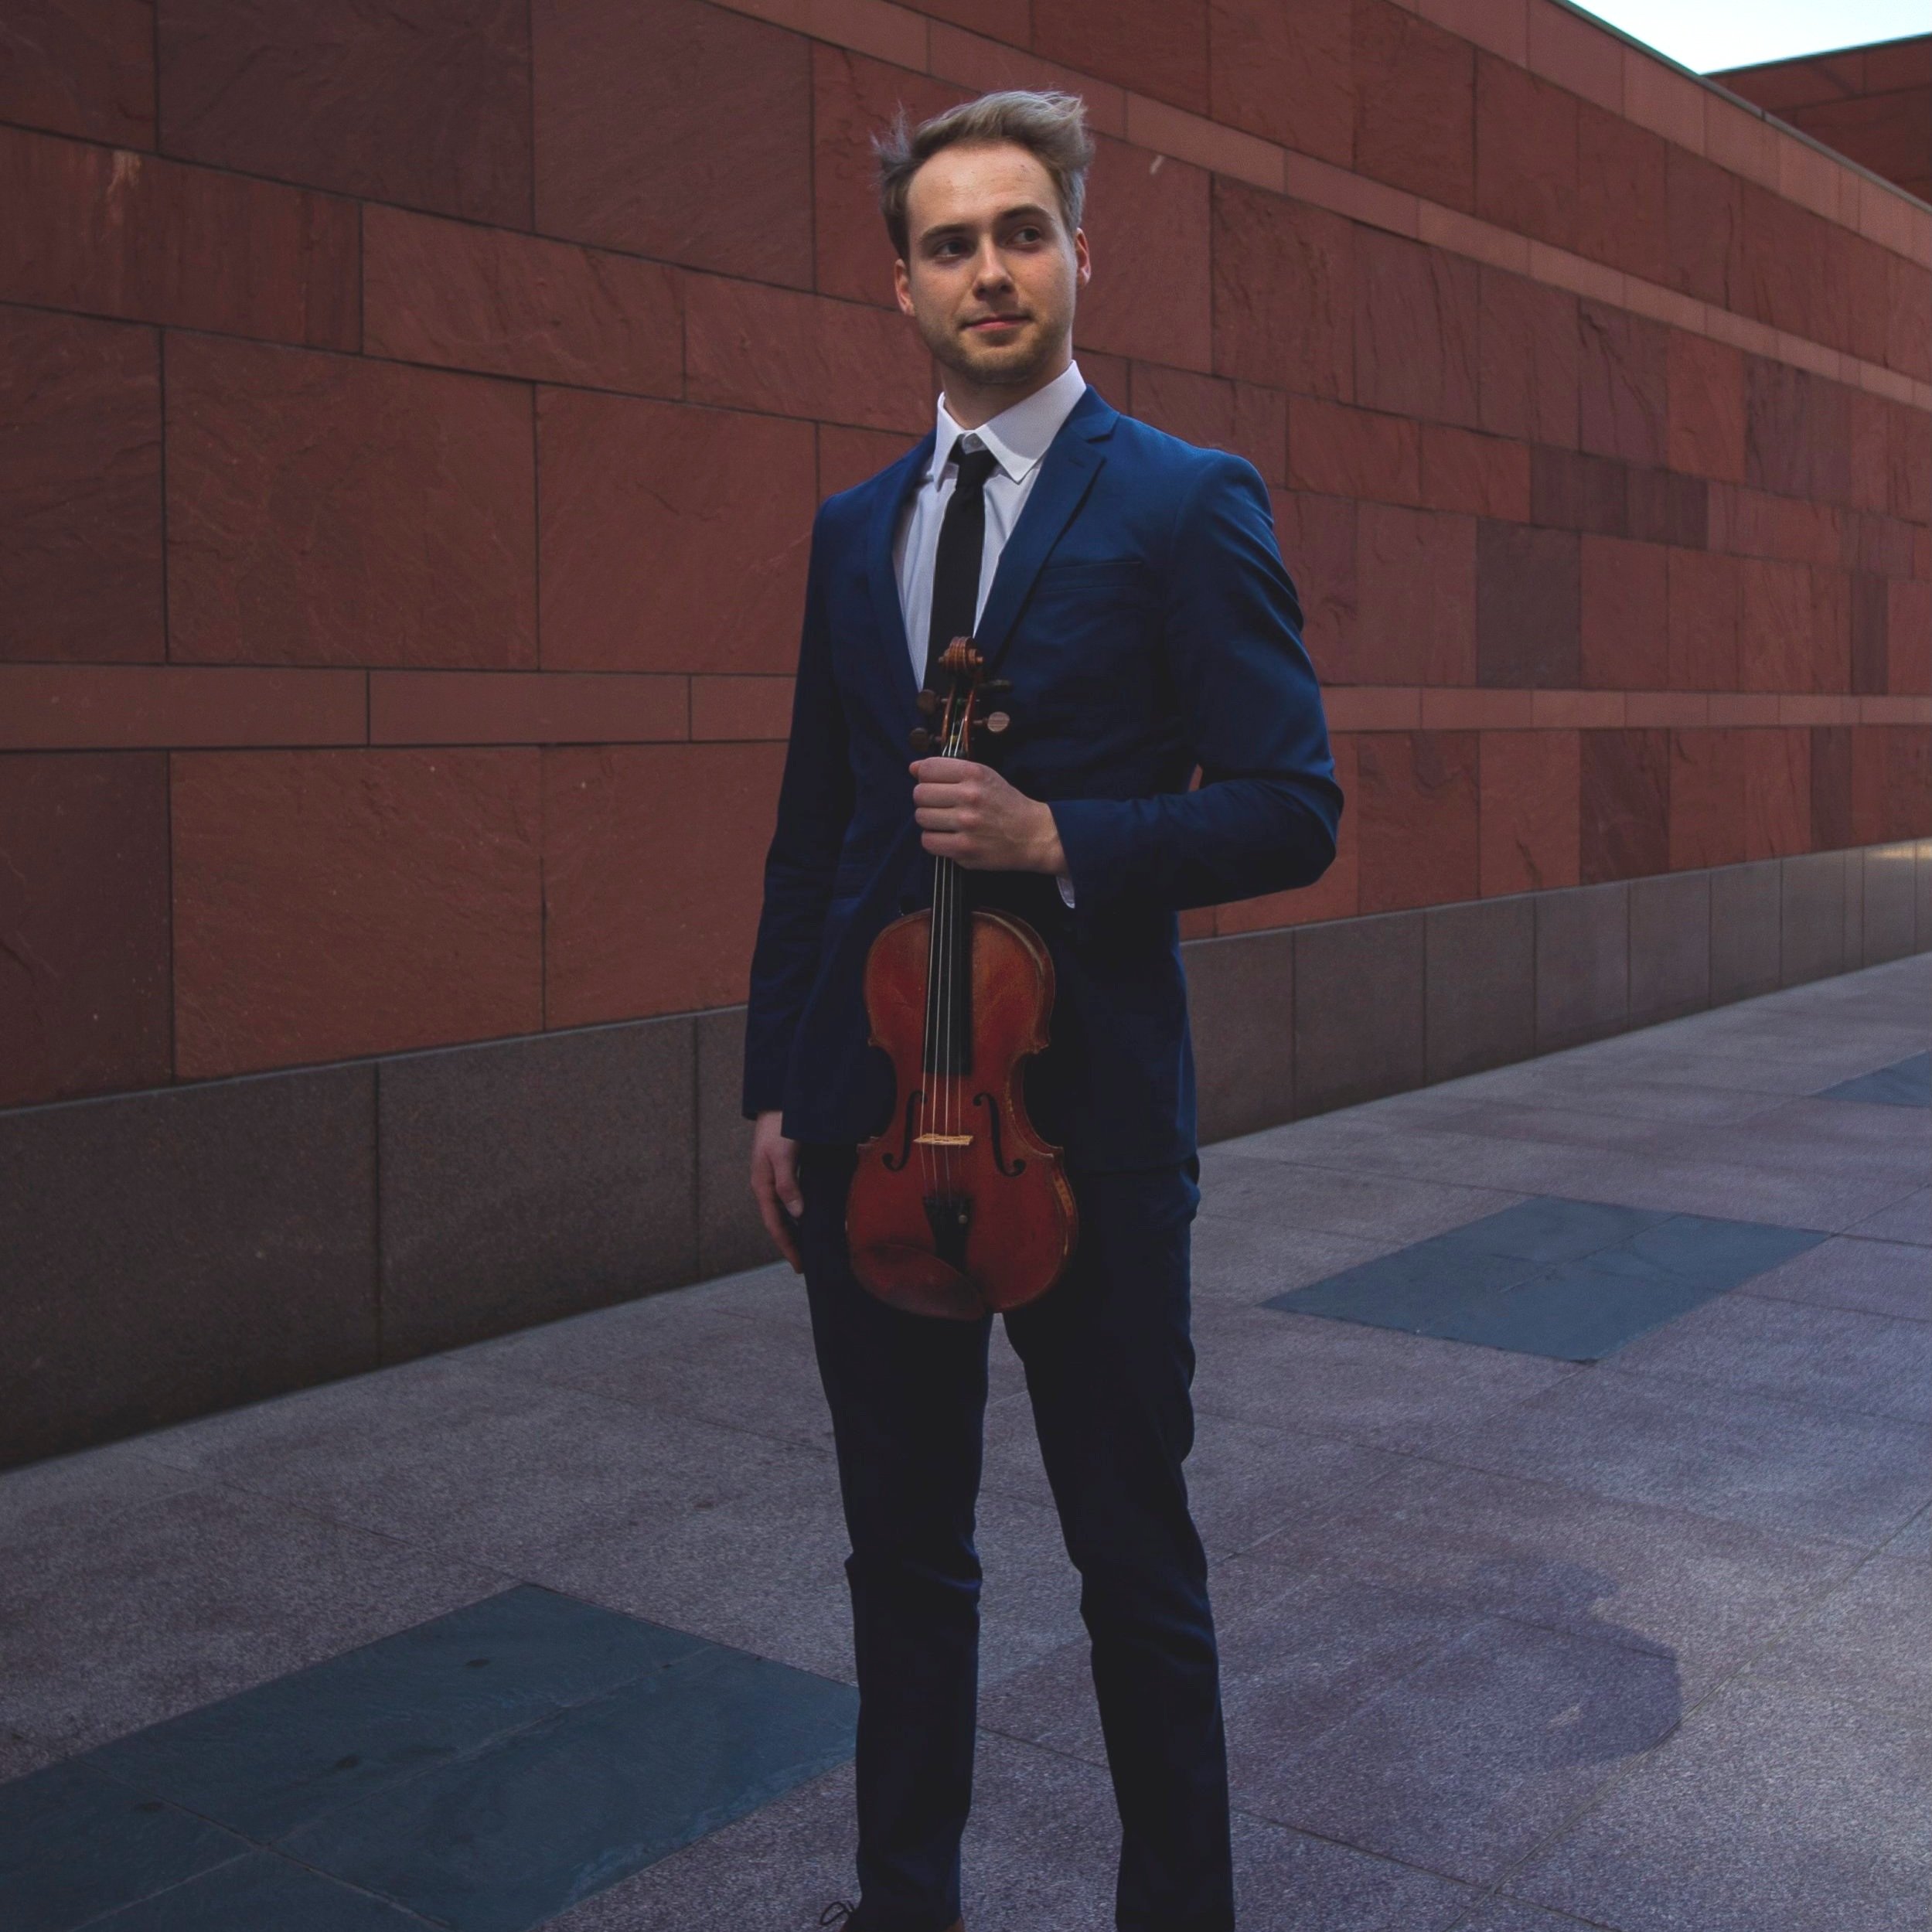 Evan Johanson, violin